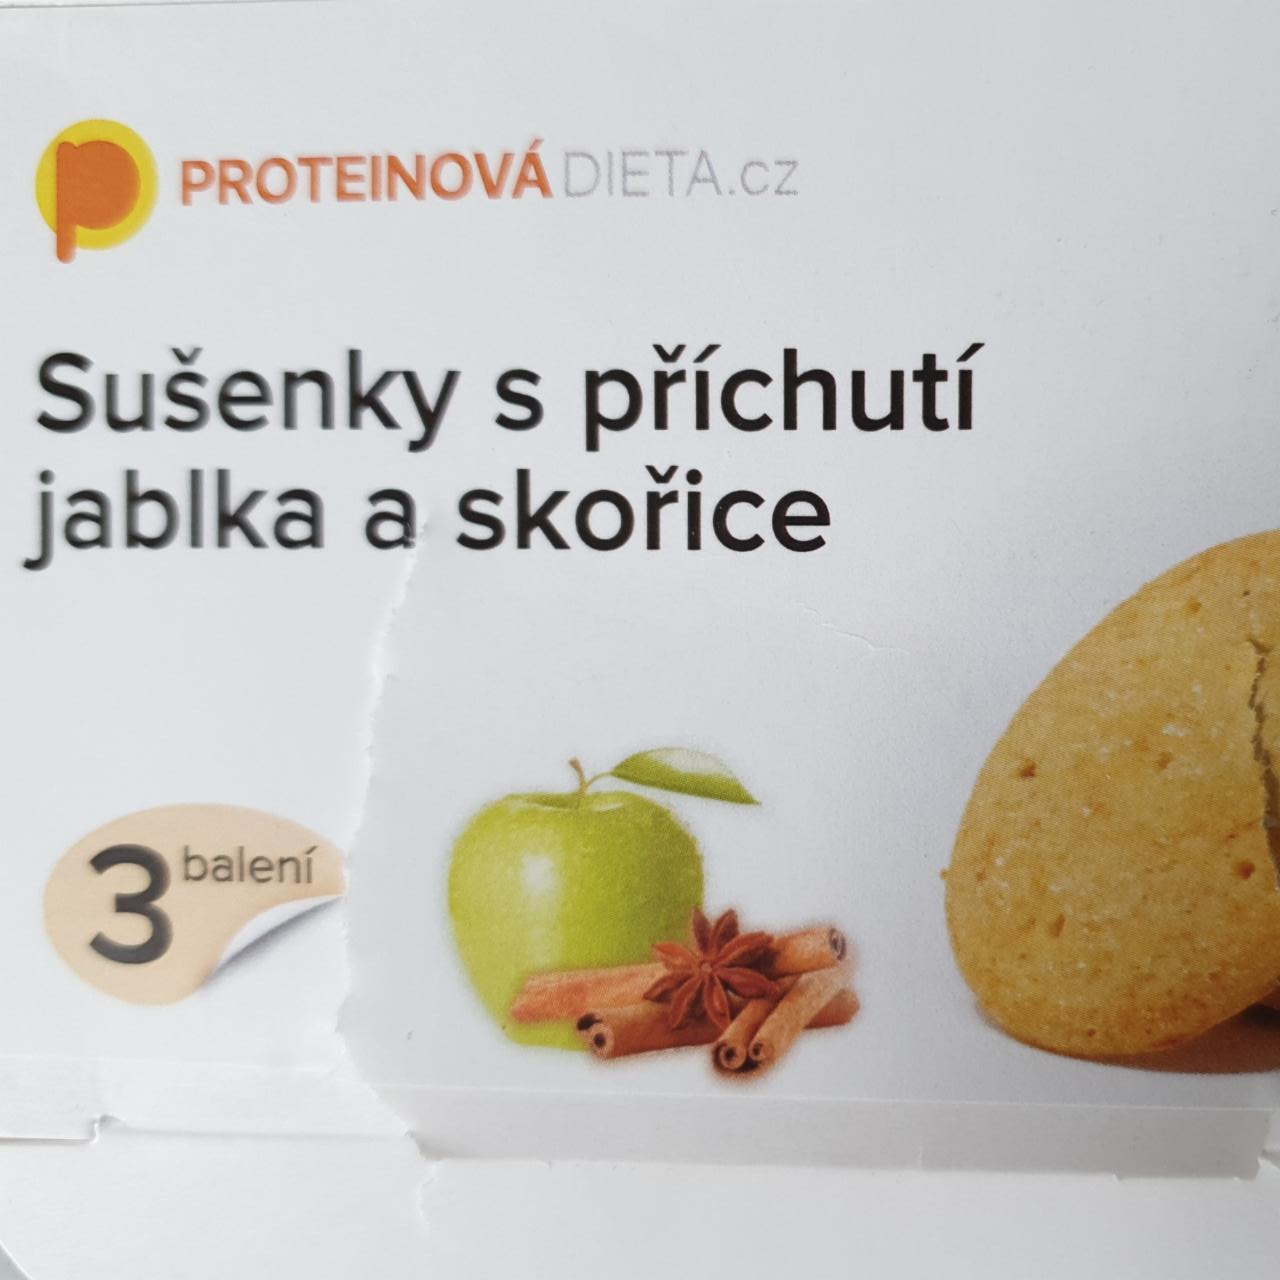 Fotografie - Sušenky s příchutí jablka a skořice ProteinováDieta.cz